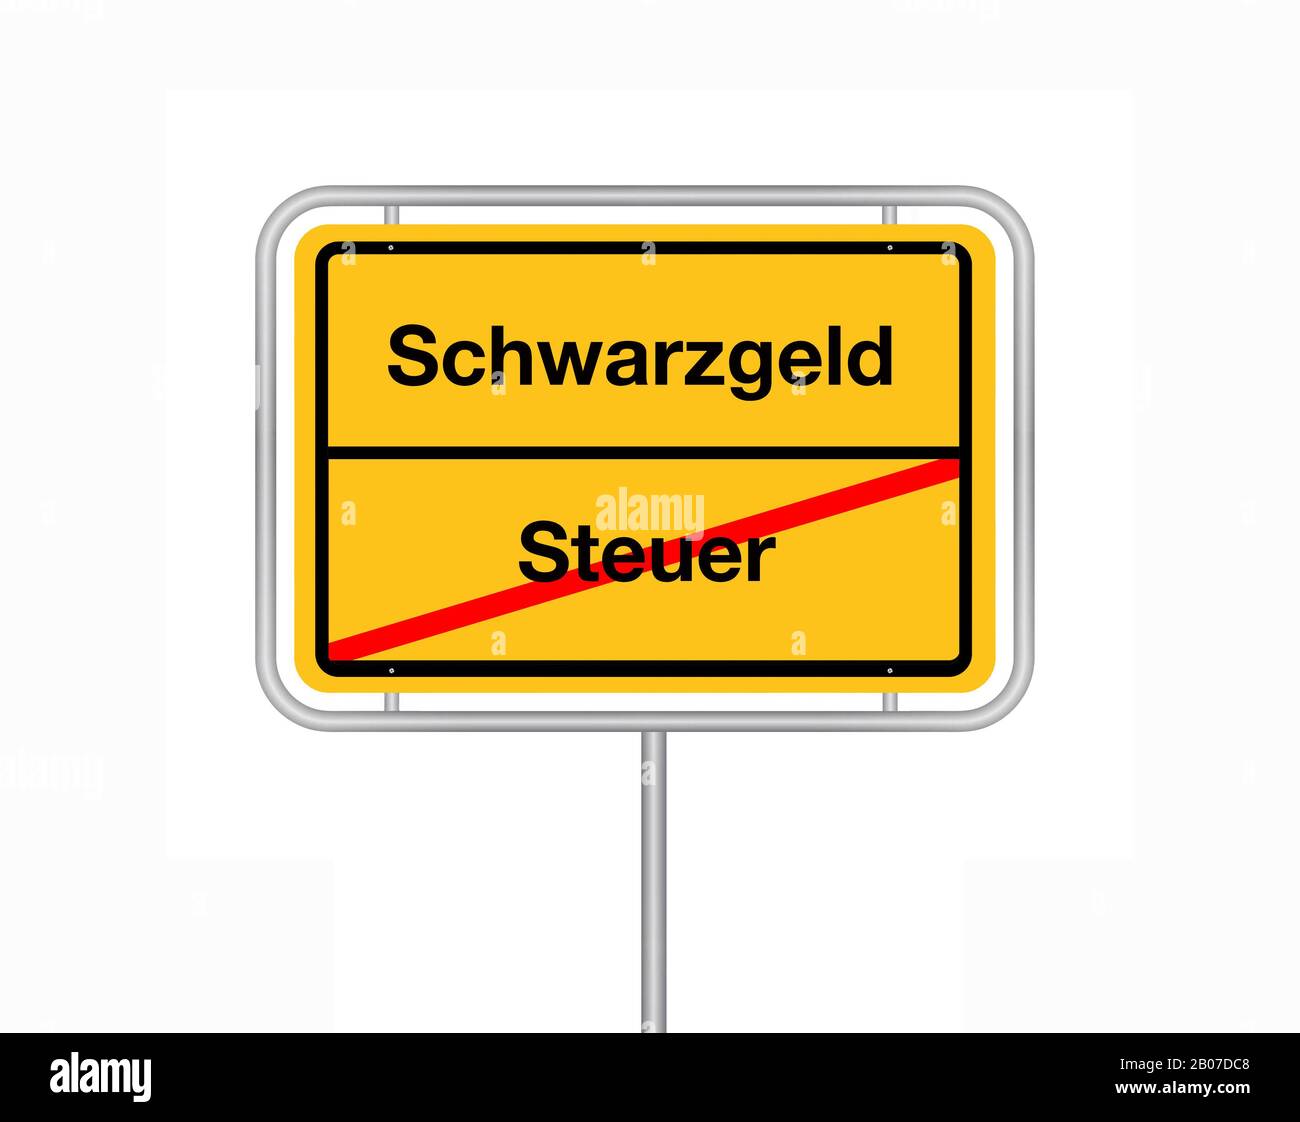 Señal de límite de la ciudad de letras Schwarzgeld - Steuer, impuestos - ingresos ilegales, Alemania Foto de stock